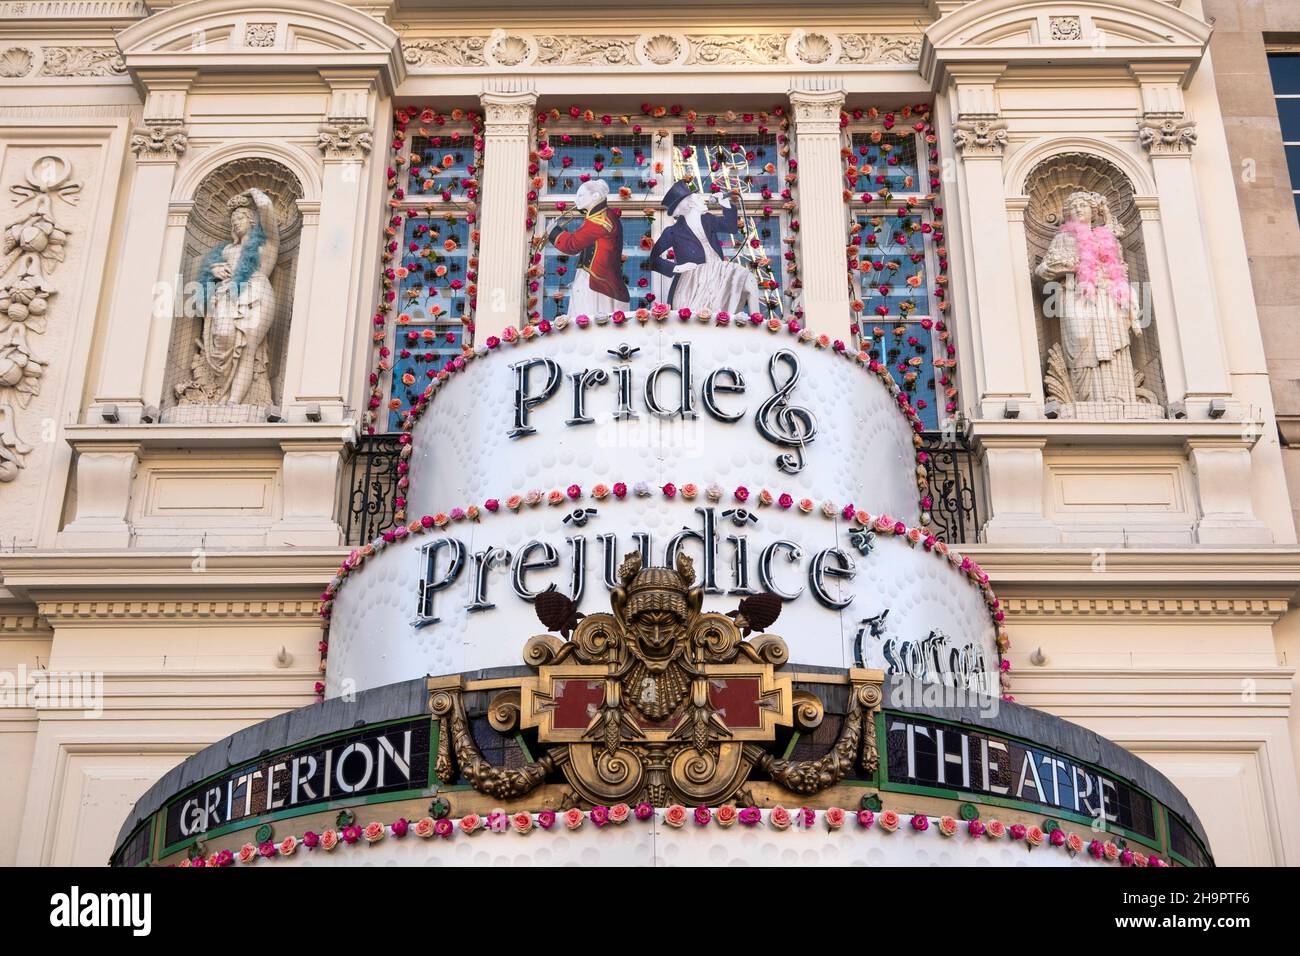 Royaume-Uni, Angleterre, Londres, Piccadilly Circus, Criterion Theatre,Signe de fierté et de préjudice sur l'entrée Banque D'Images